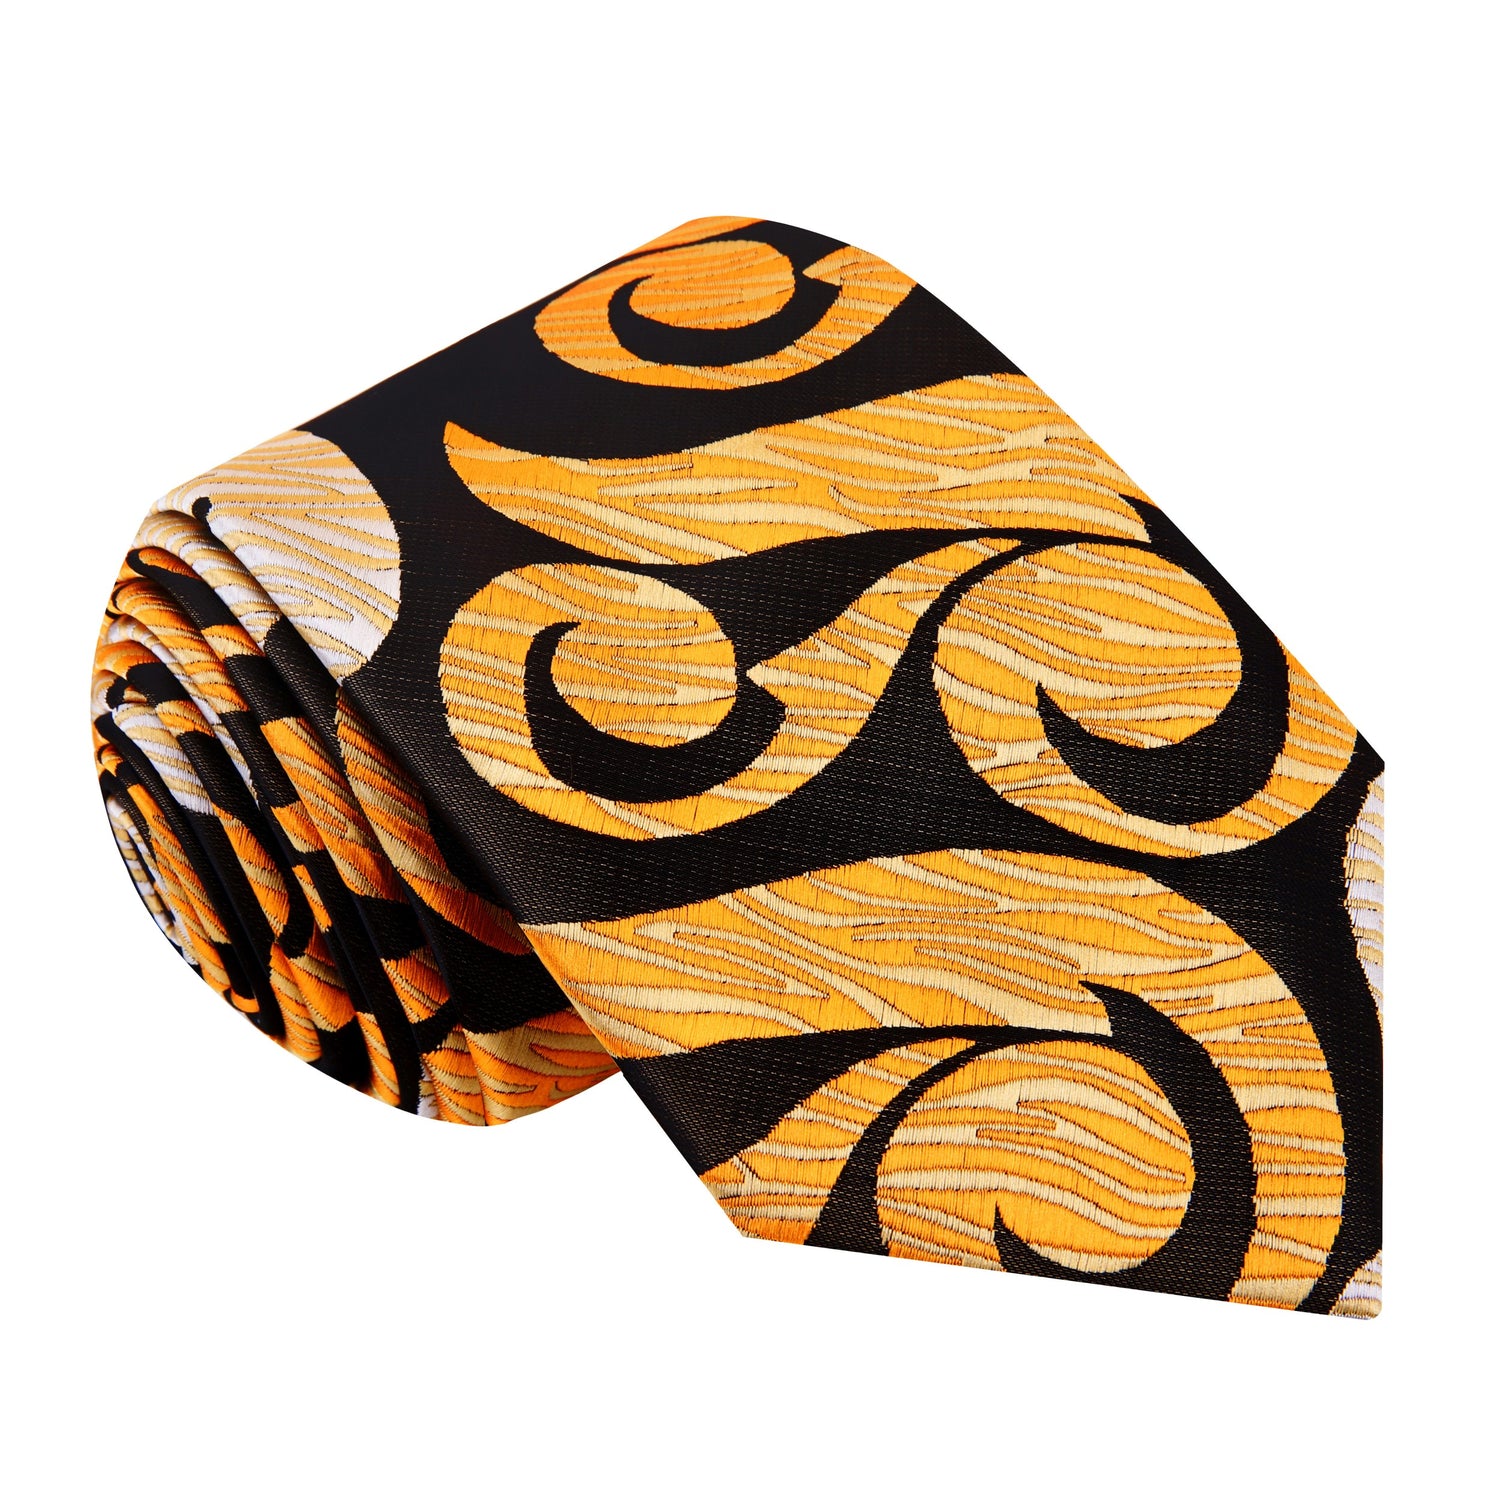 A Tan, Dark Brown, Gold Abstract Swirl Pattern Silk Necktie